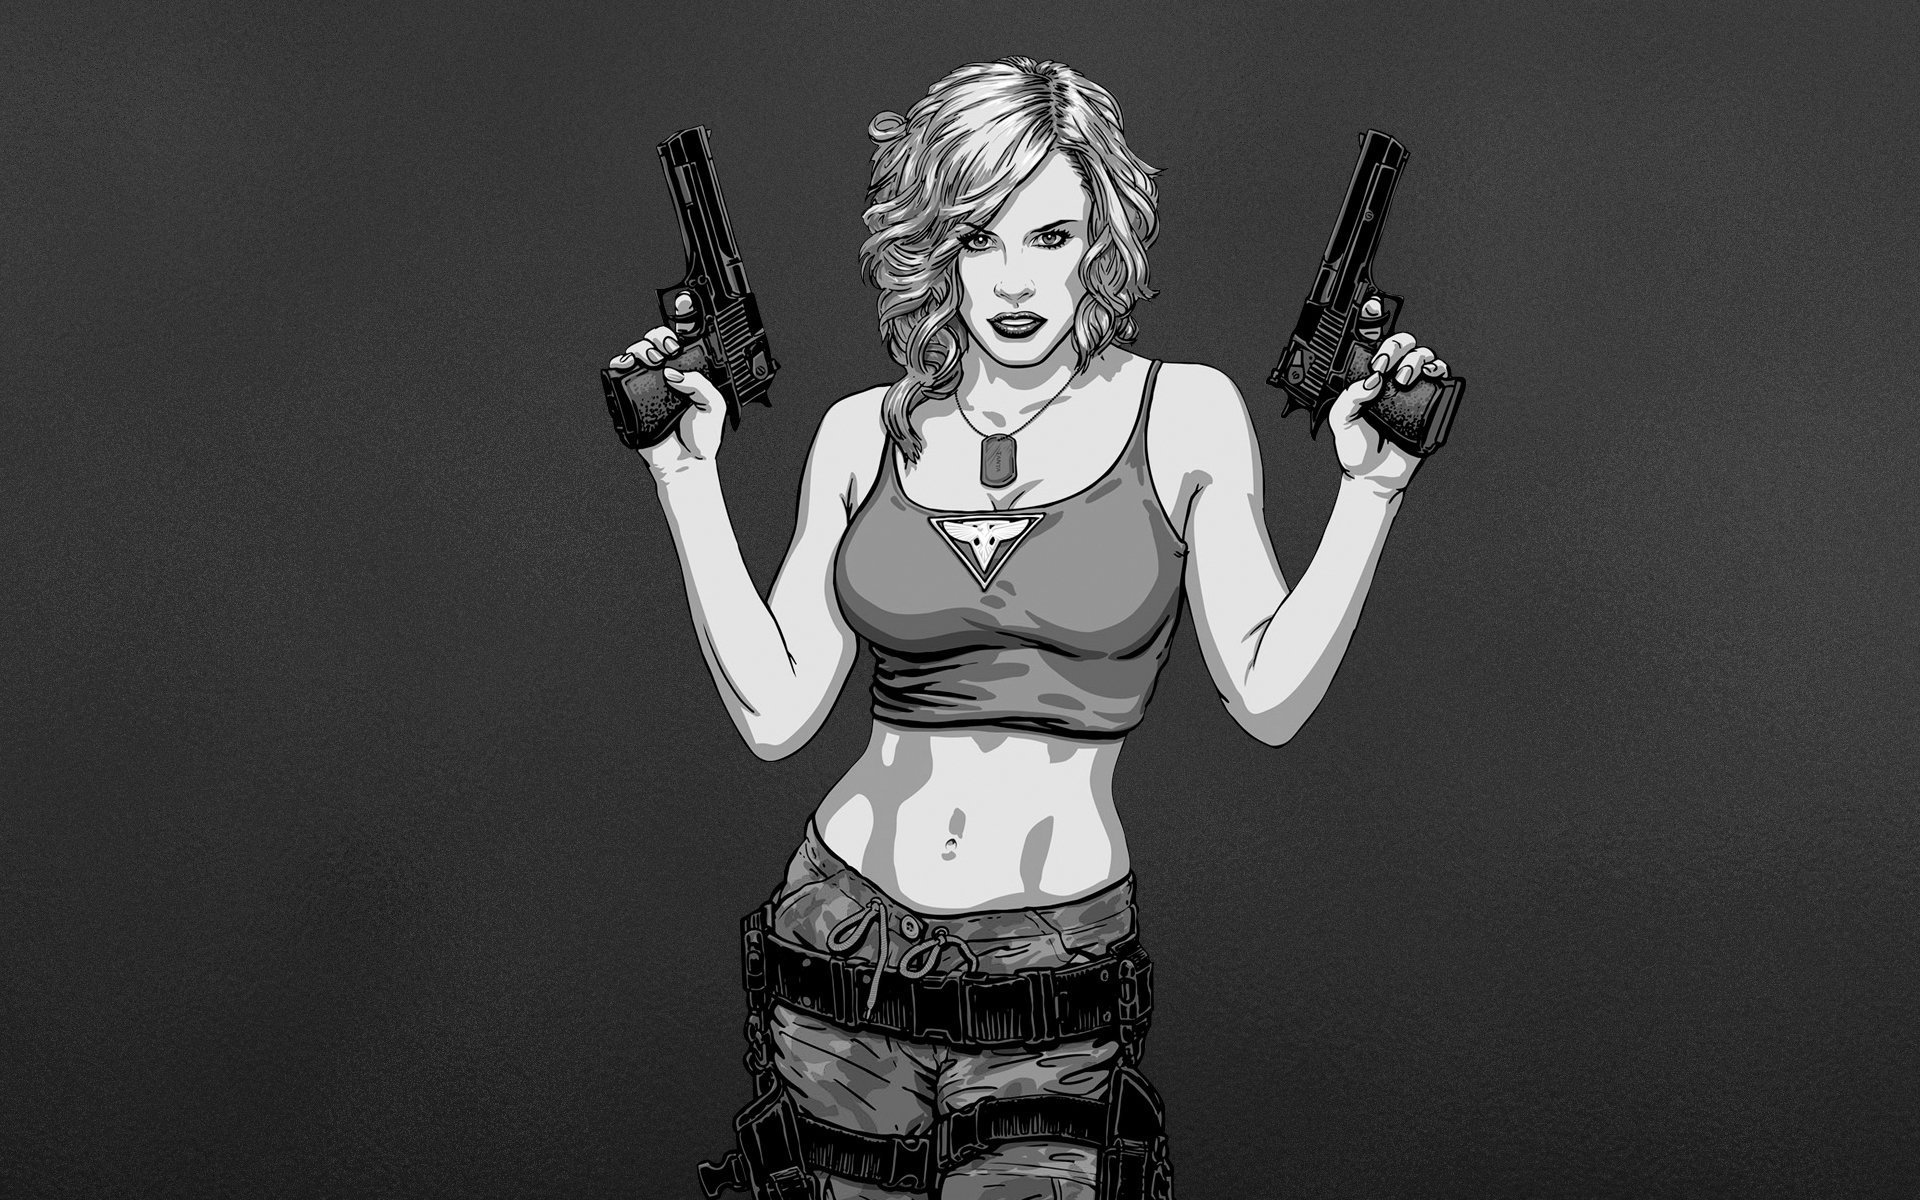 Меган Дэниэлс позирует с пистолетом и ружьем 